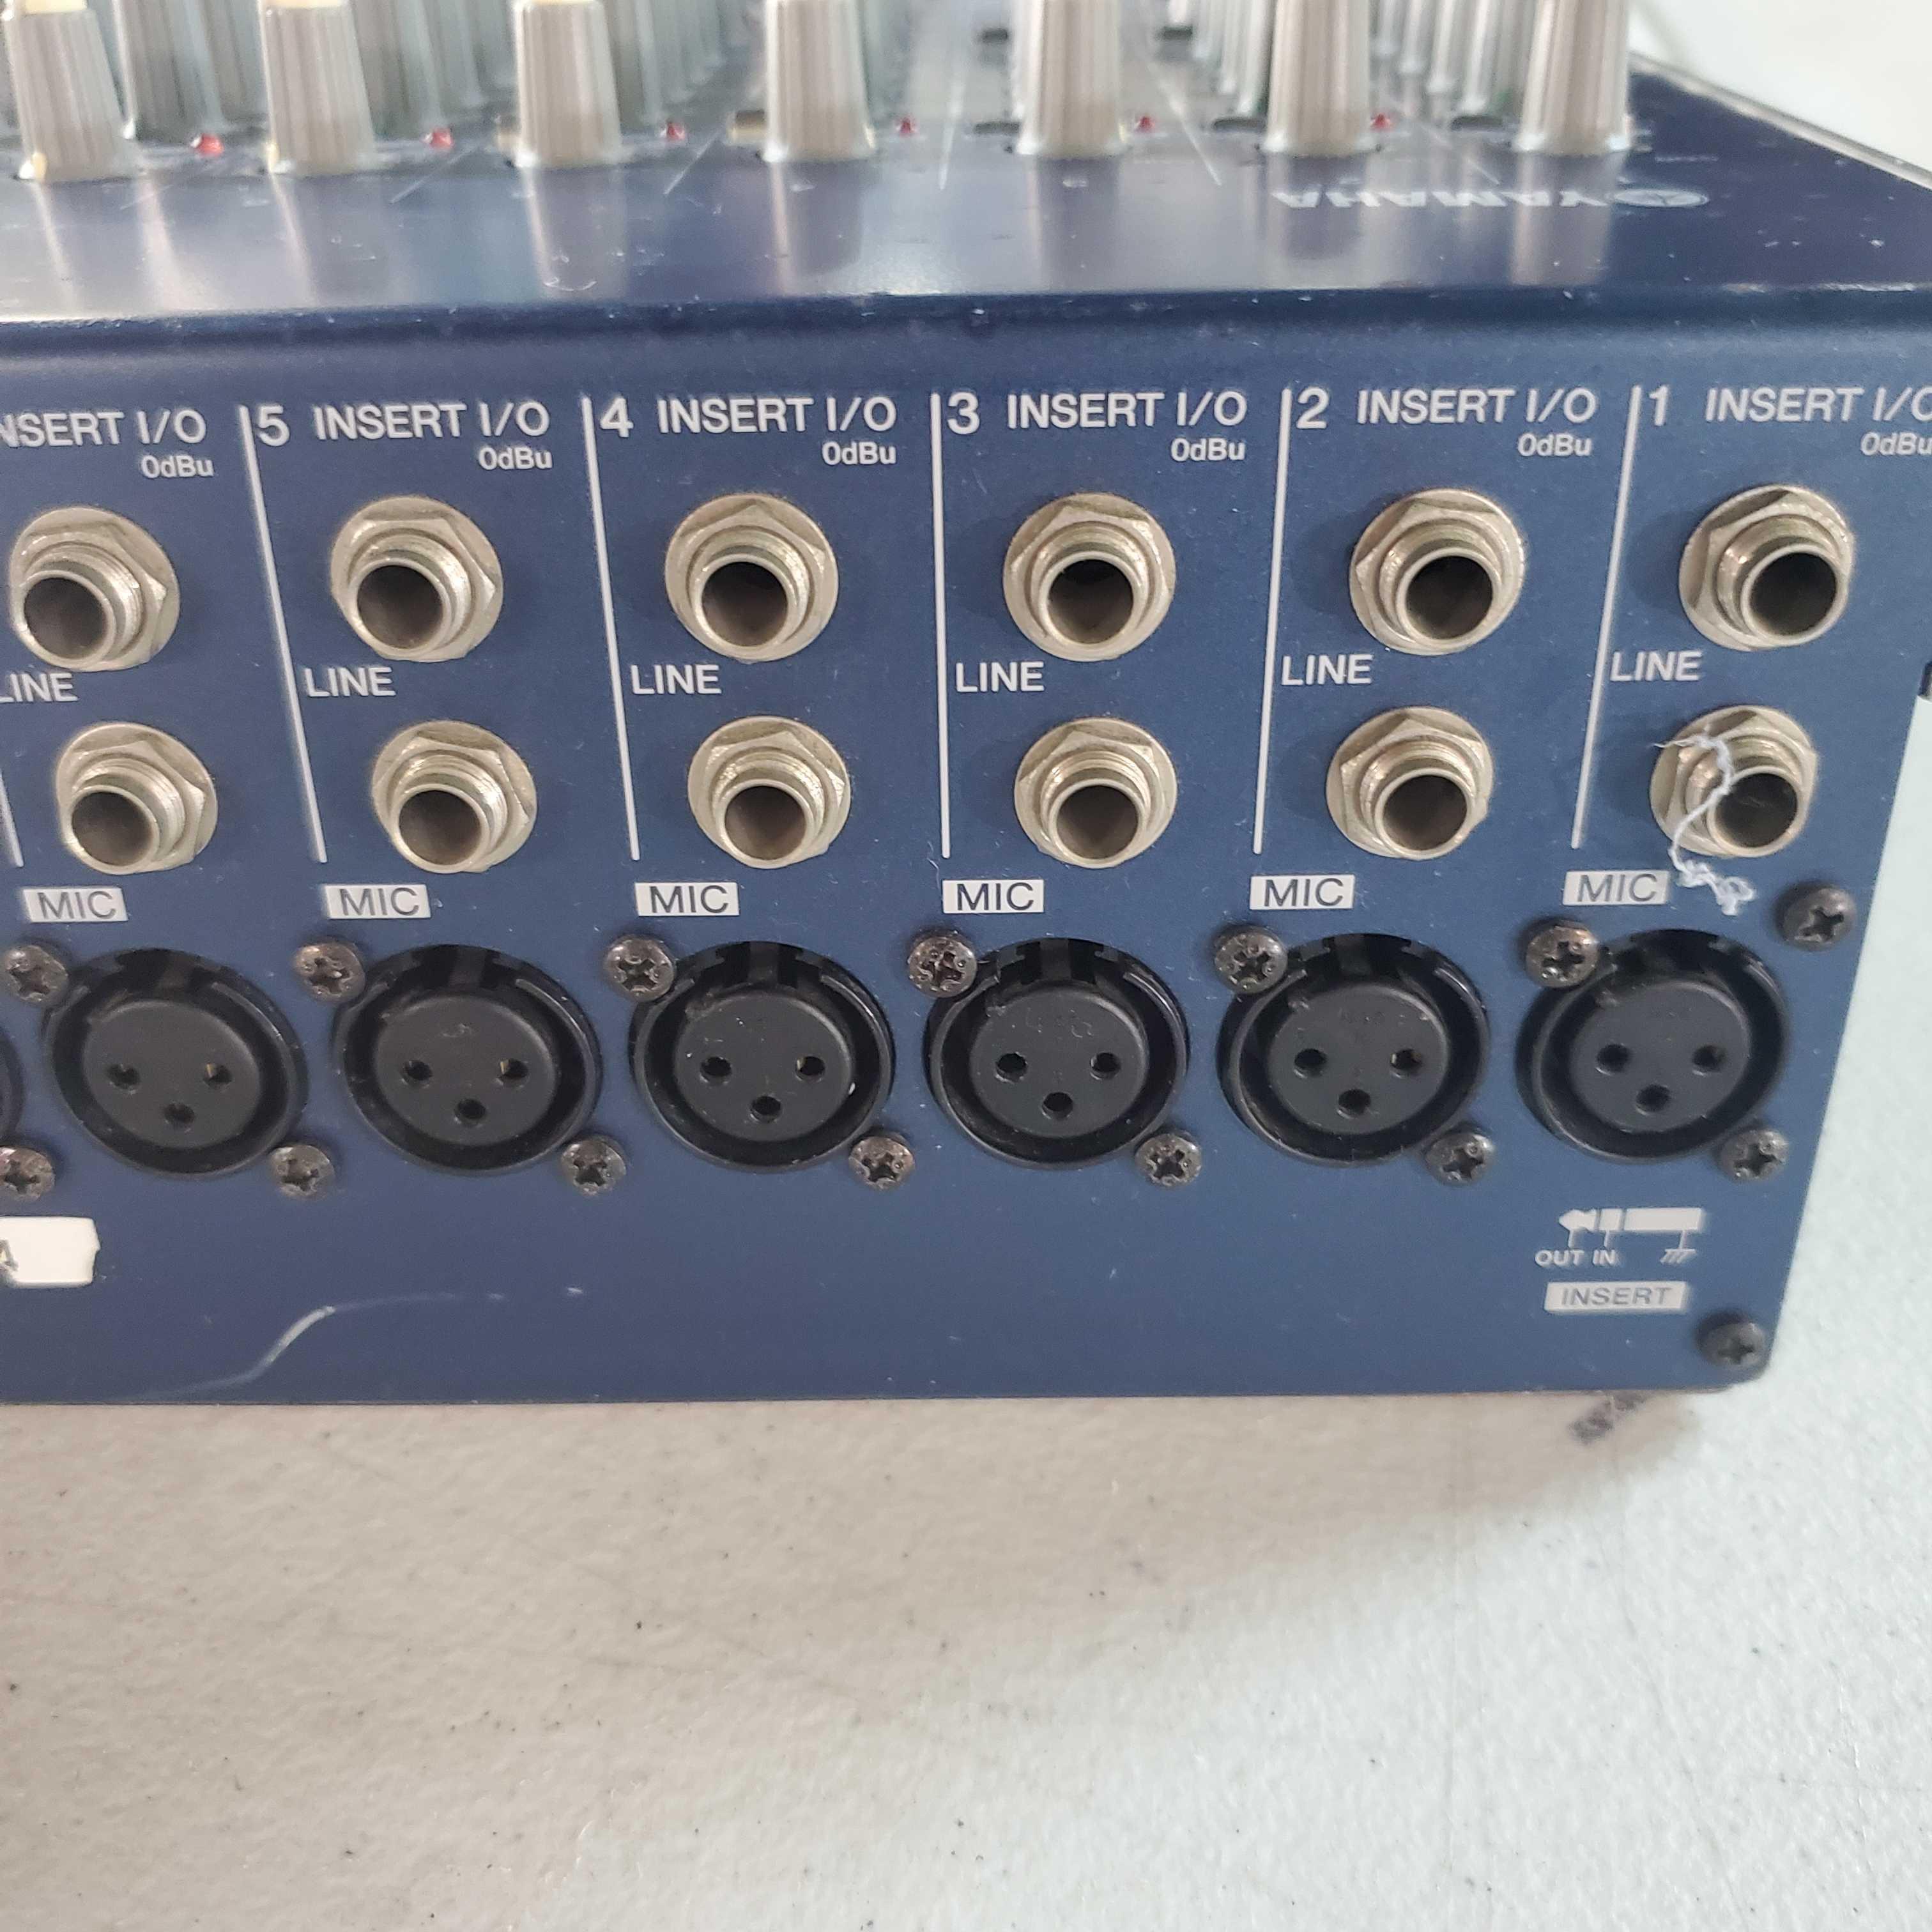 Yamaha MG16/4 Analog Recording Mixer (No Power Supply)